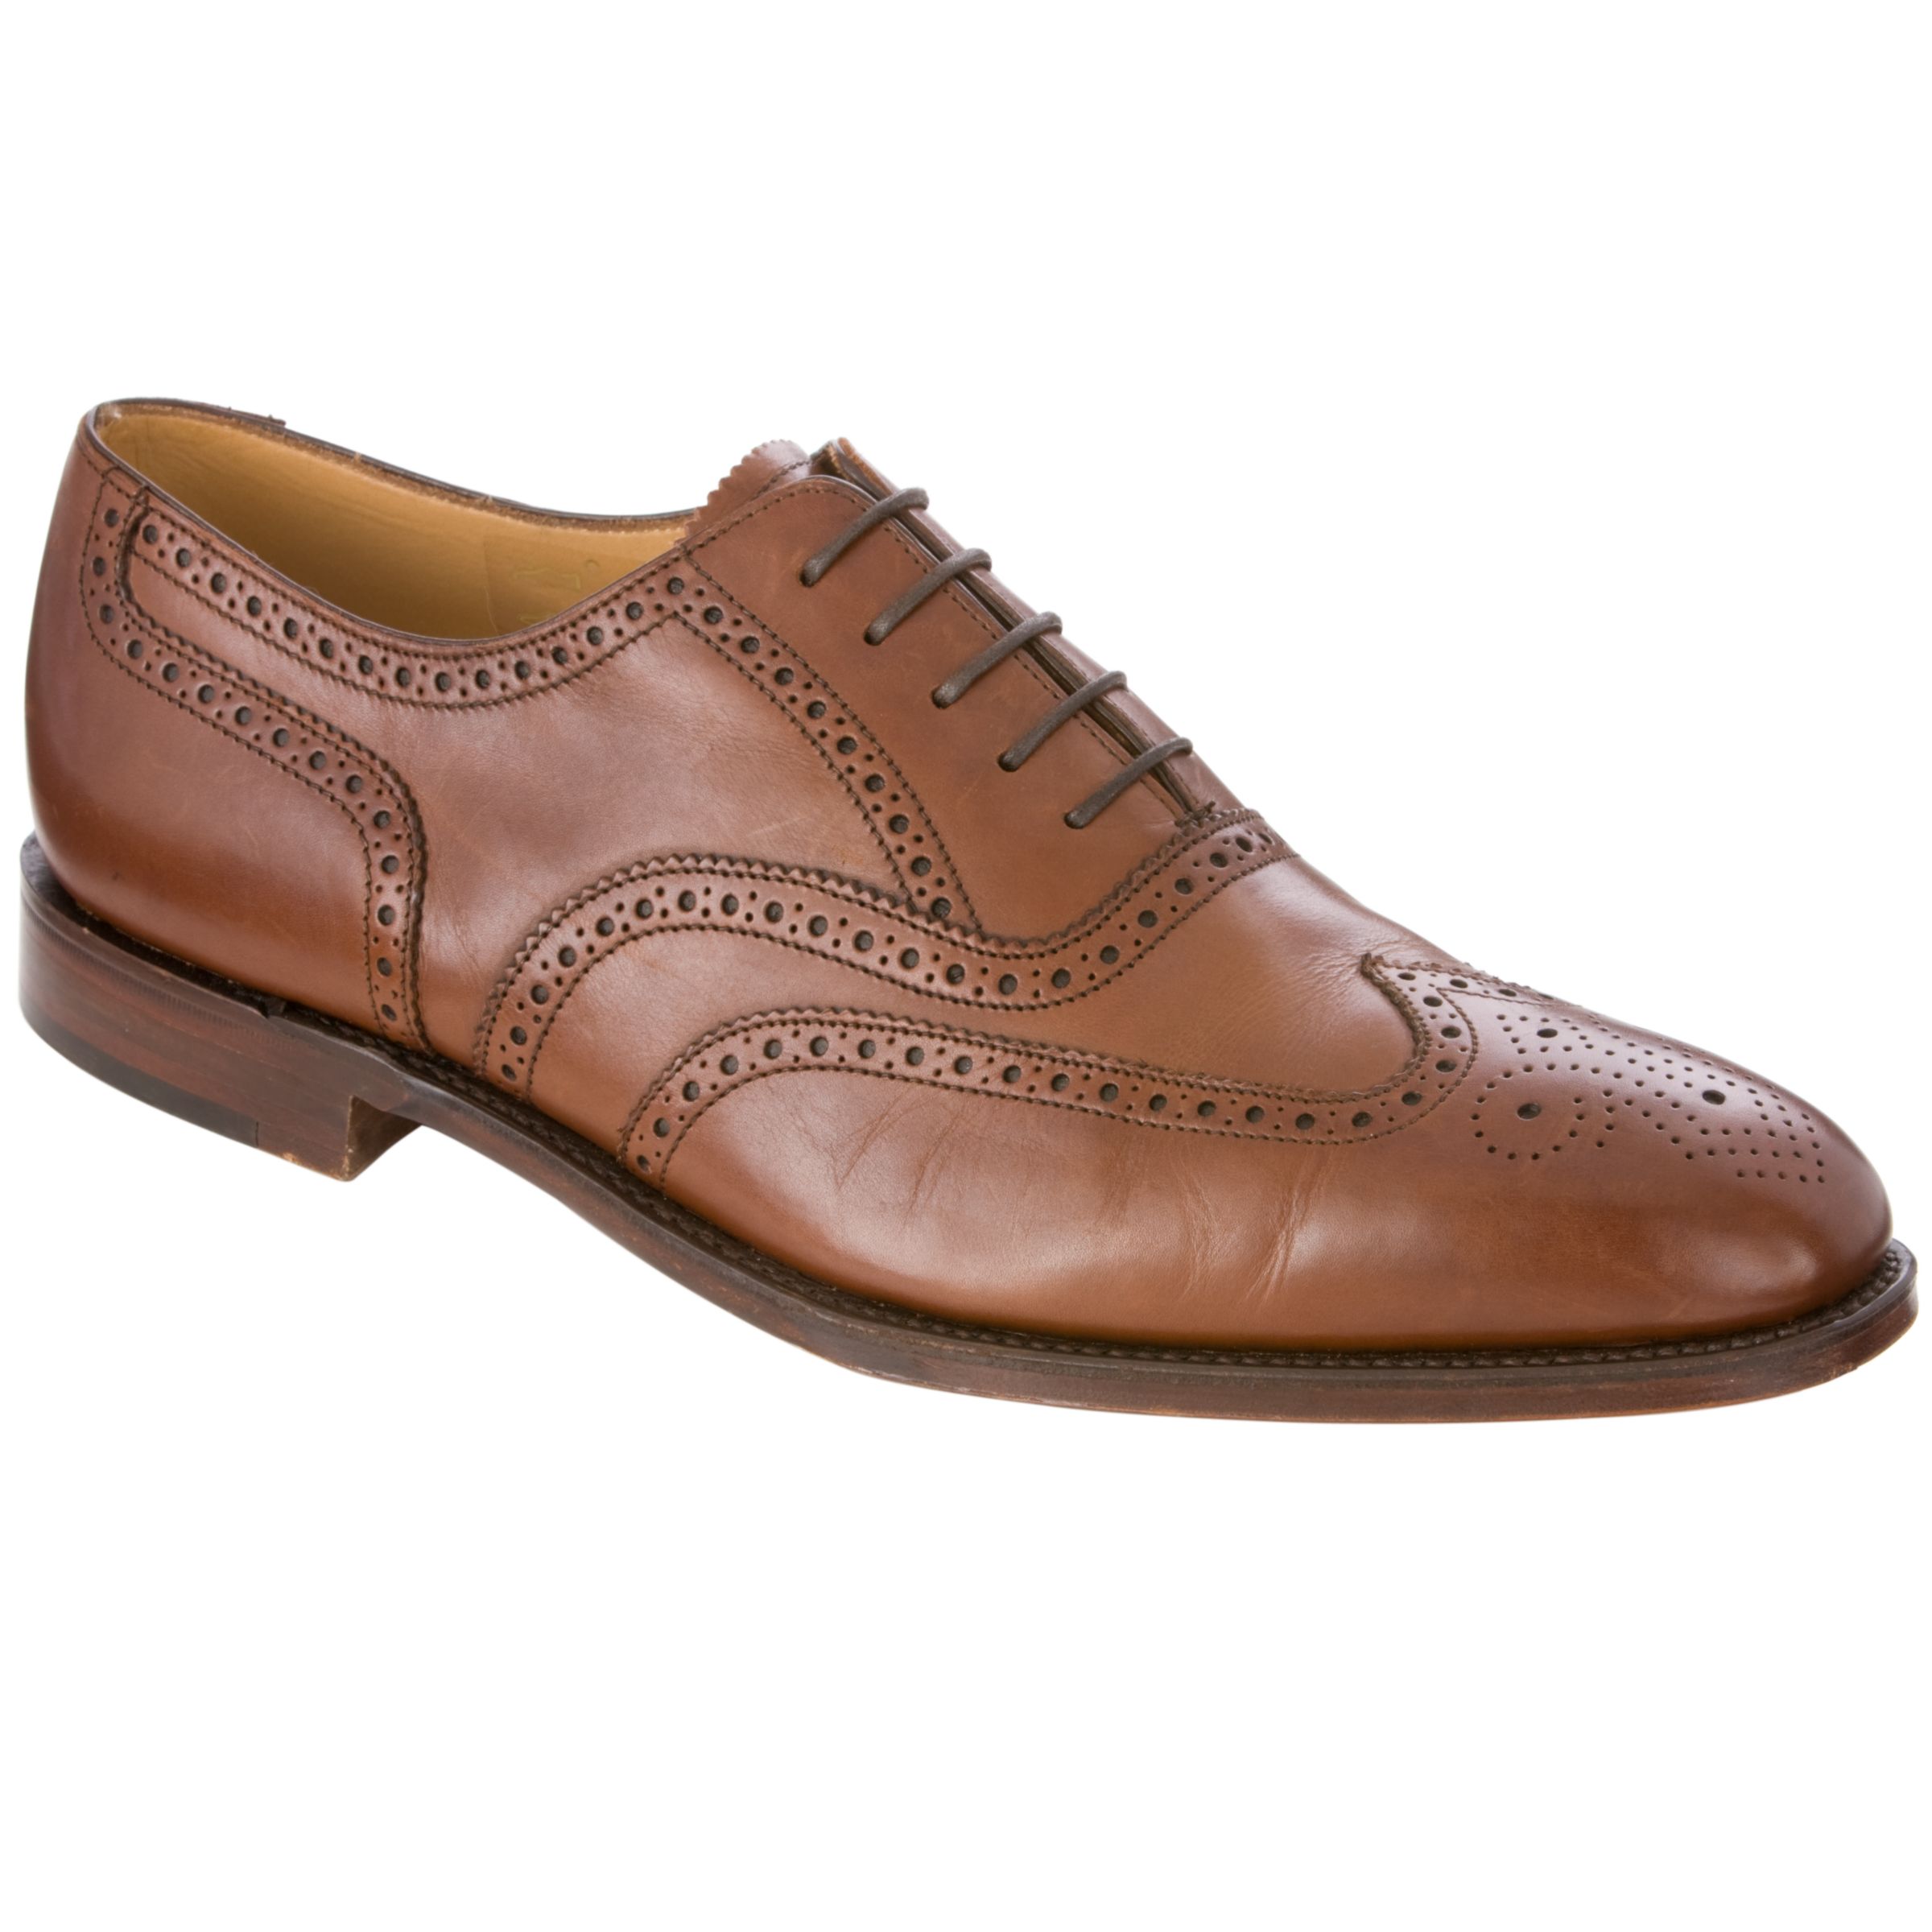 Loake Buckingham Leather Brogue Shoes, Hazelnut at John Lewis